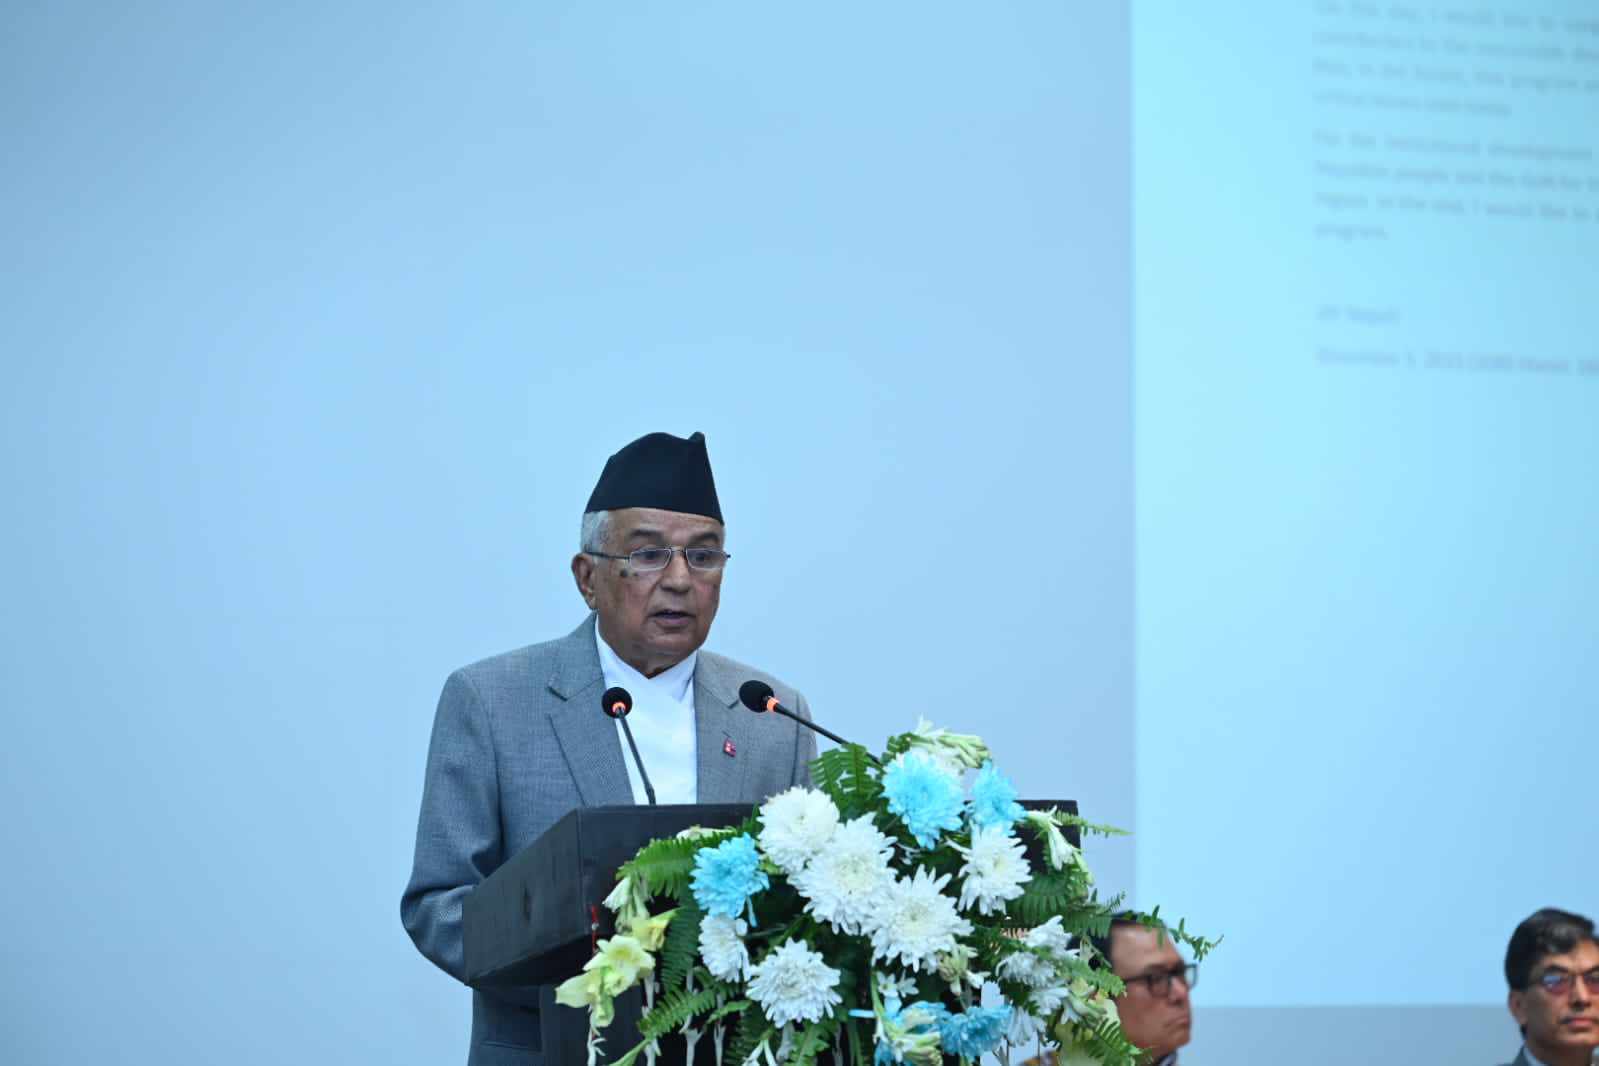 जलवायु परिवर्तनको क्षतिपूर्तिको मुख्य हकदार नेपाल :  राष्ट्रपति पौडेल